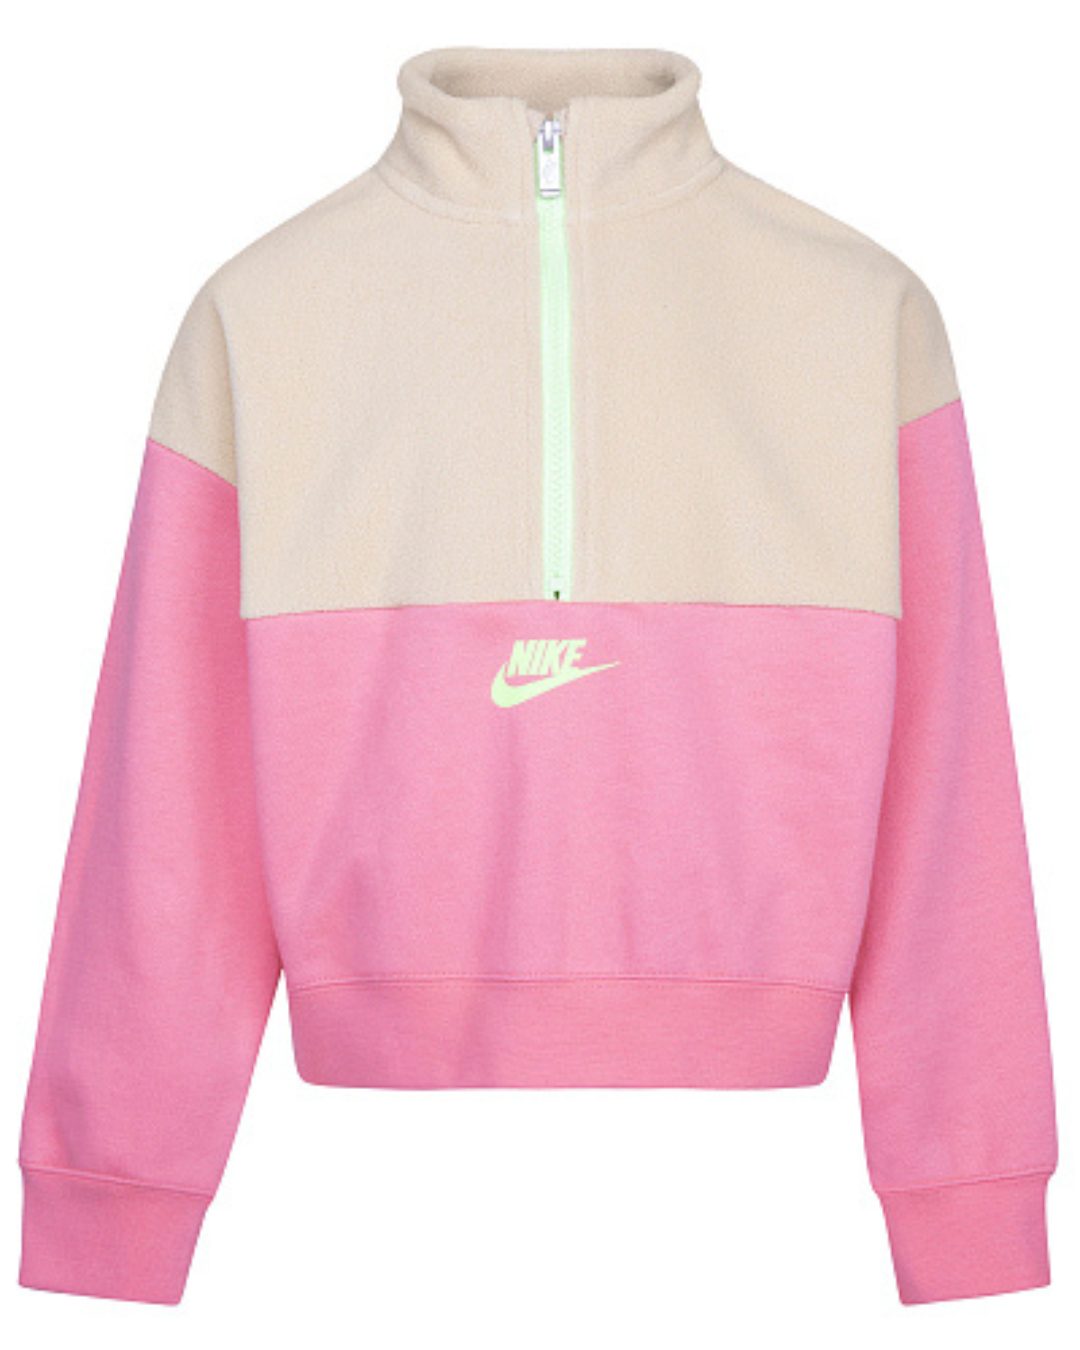 Sweatshirt Nike Fleece Enfant - Rose